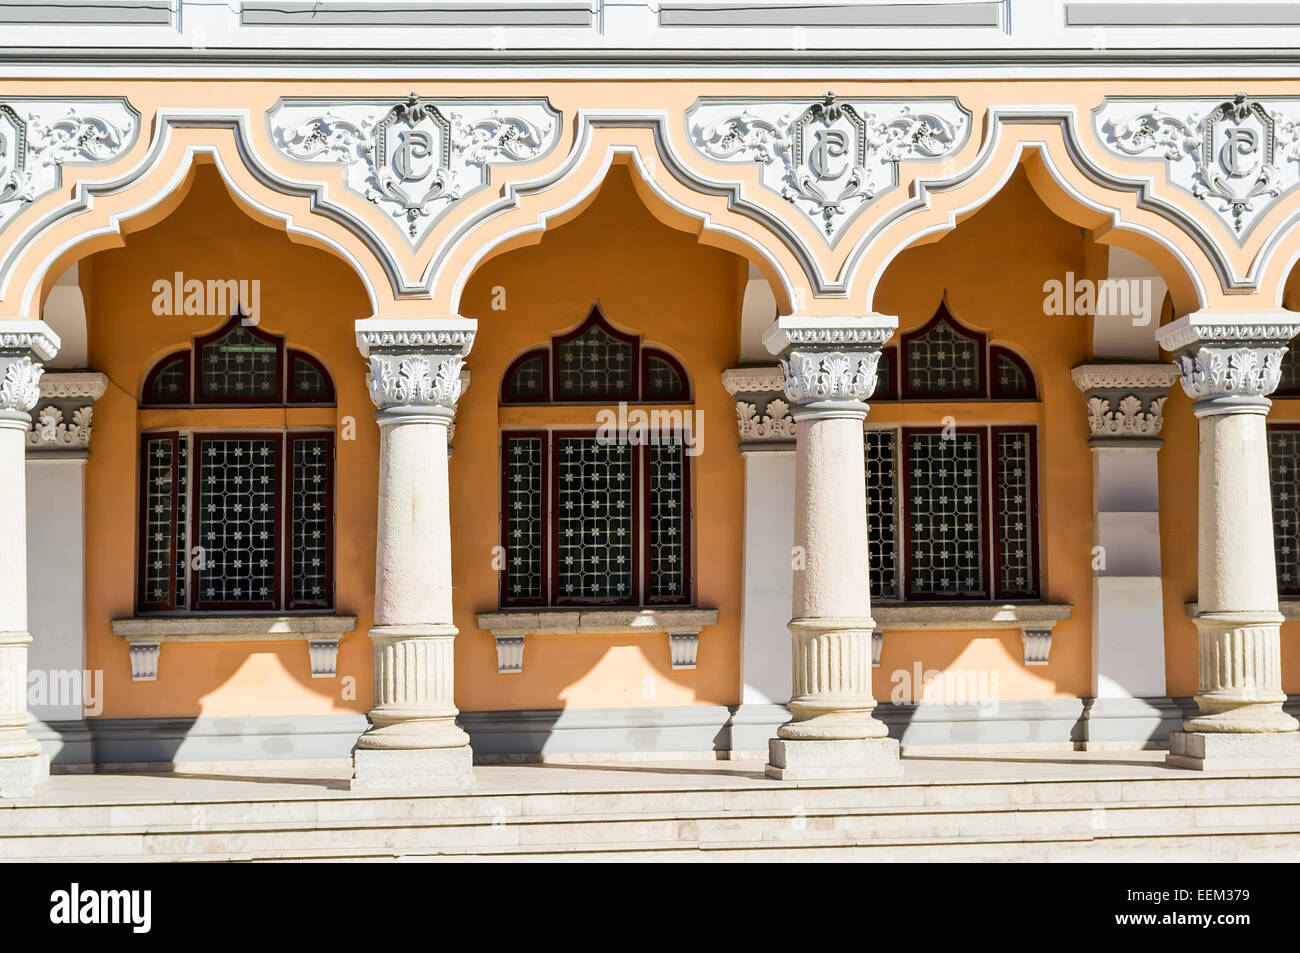 Architektonisches Detail eines historischen Gebäudes, bestehend aus einer Reihe von schönen ionischen Säulen Stockfoto